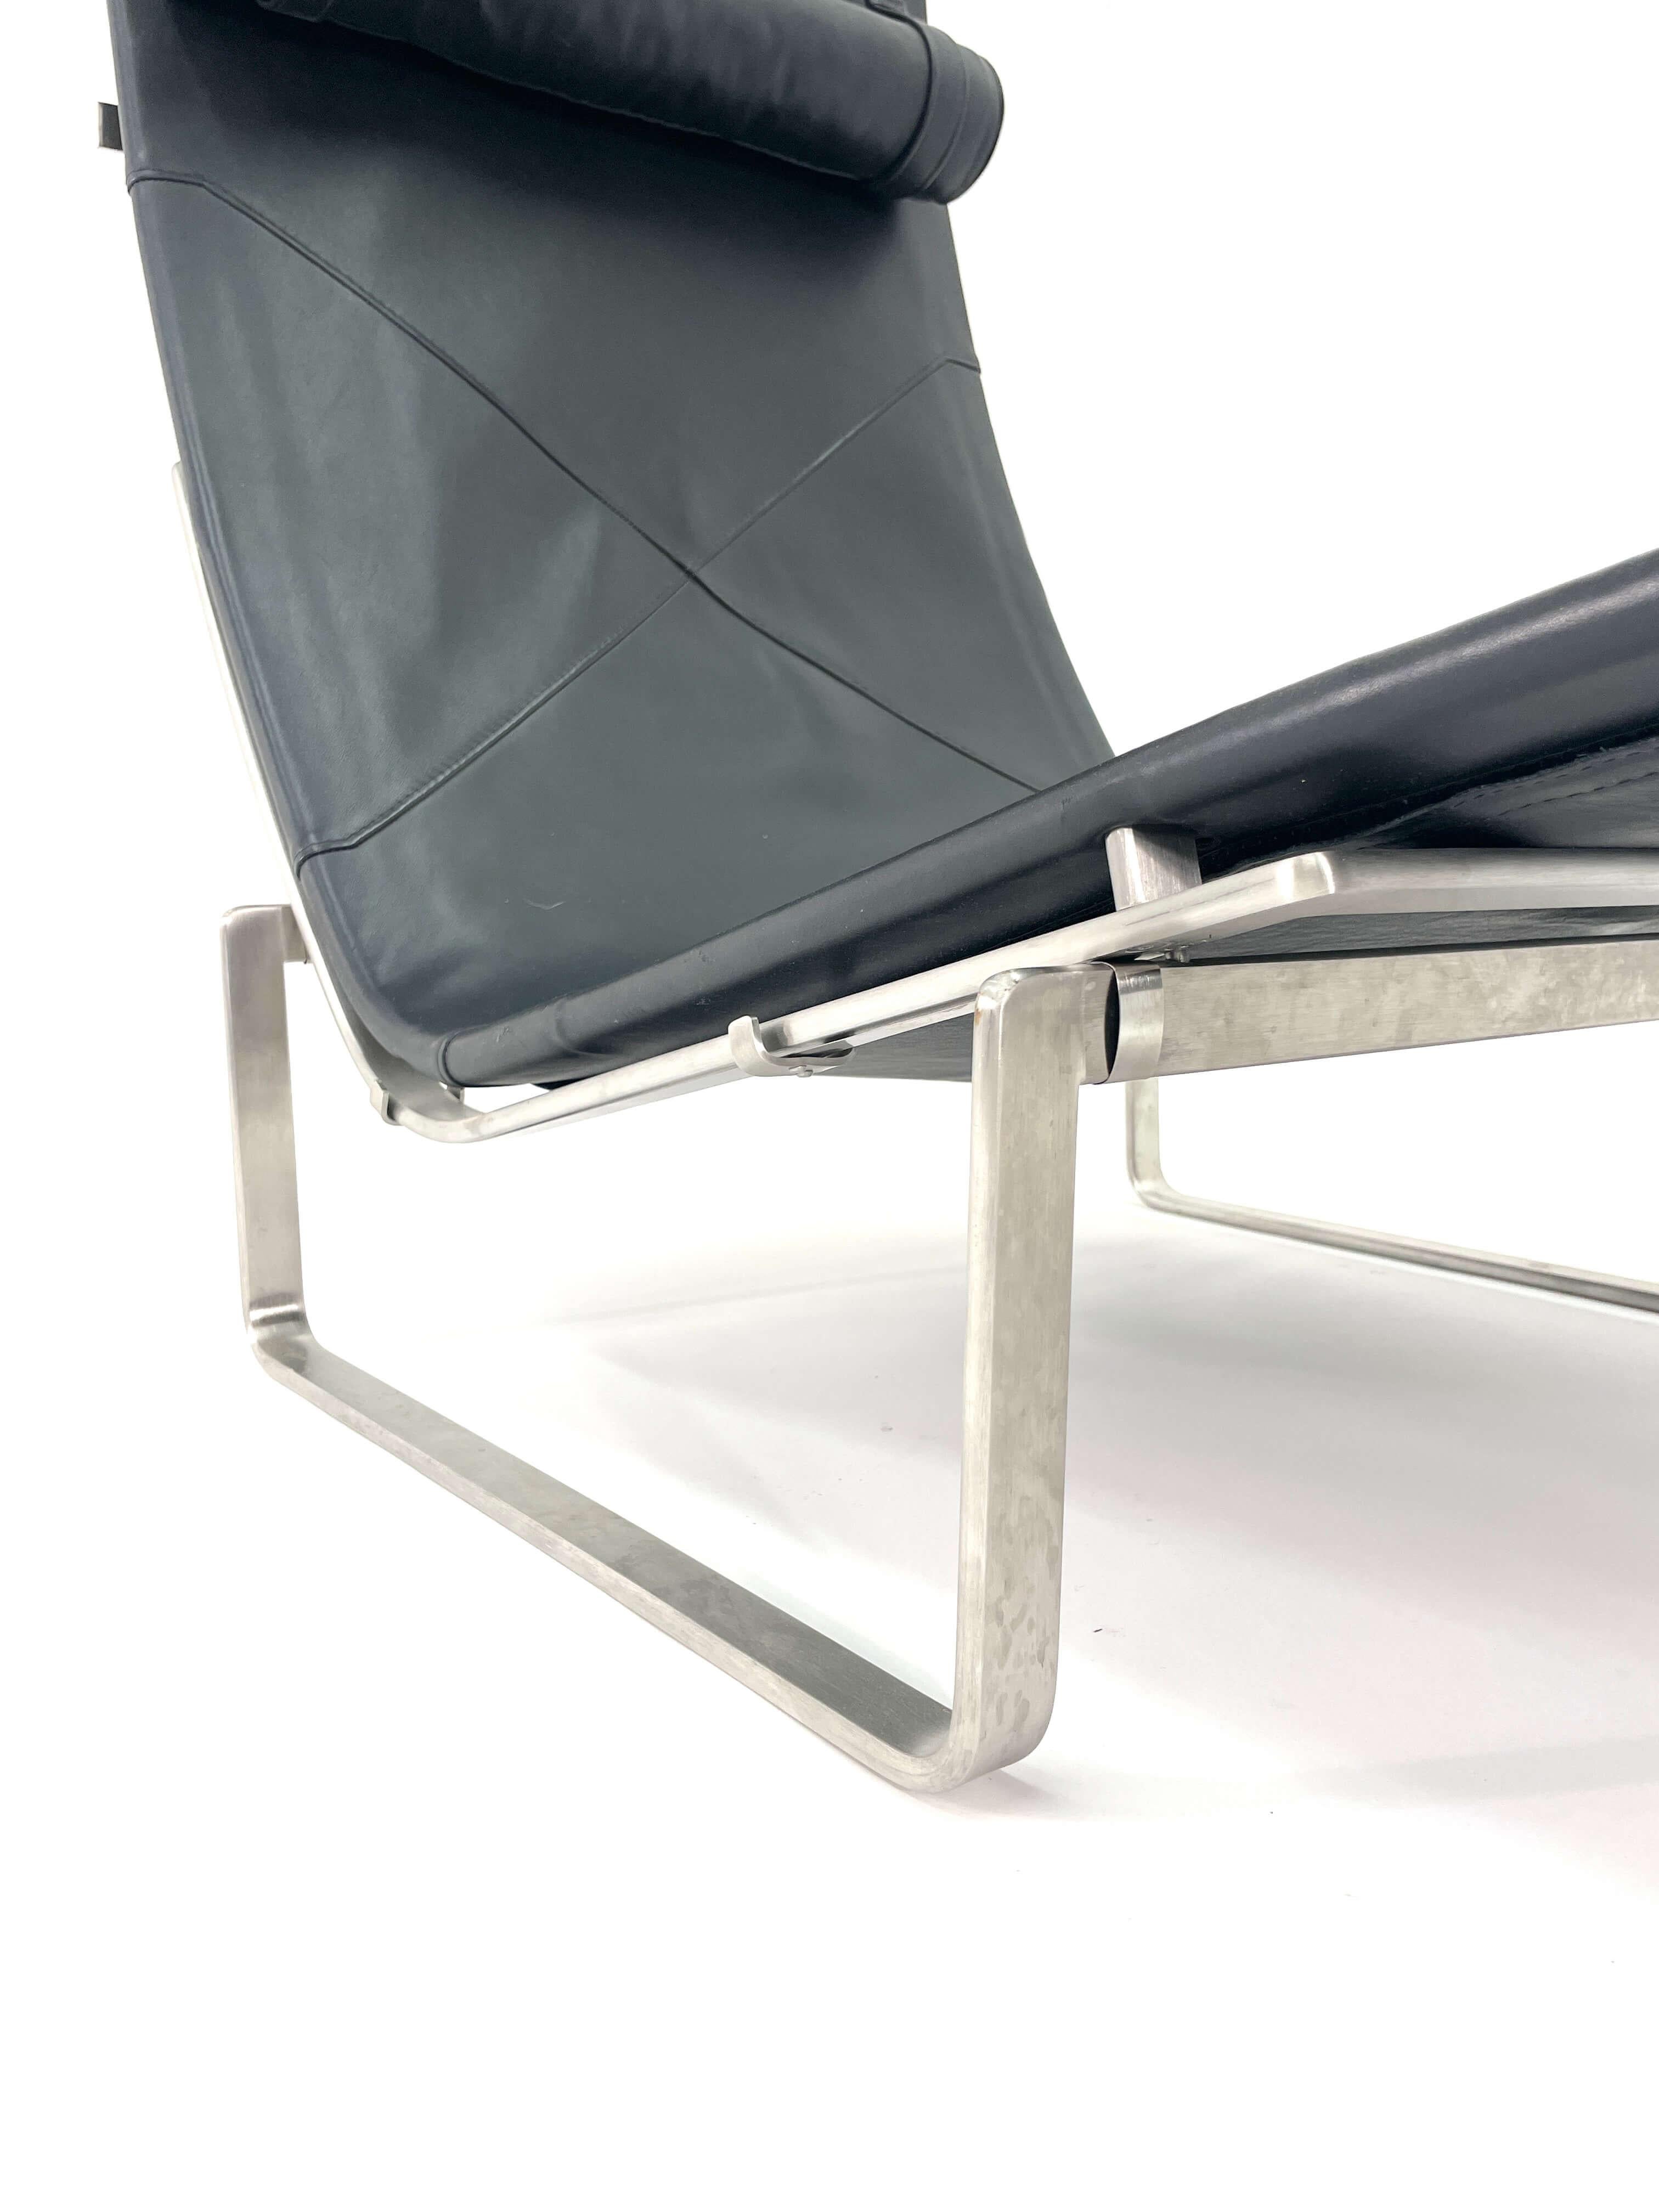 Poul Kjaerholm Chaise Lounge Model PK24 for Fritz Hansen For Sale 6